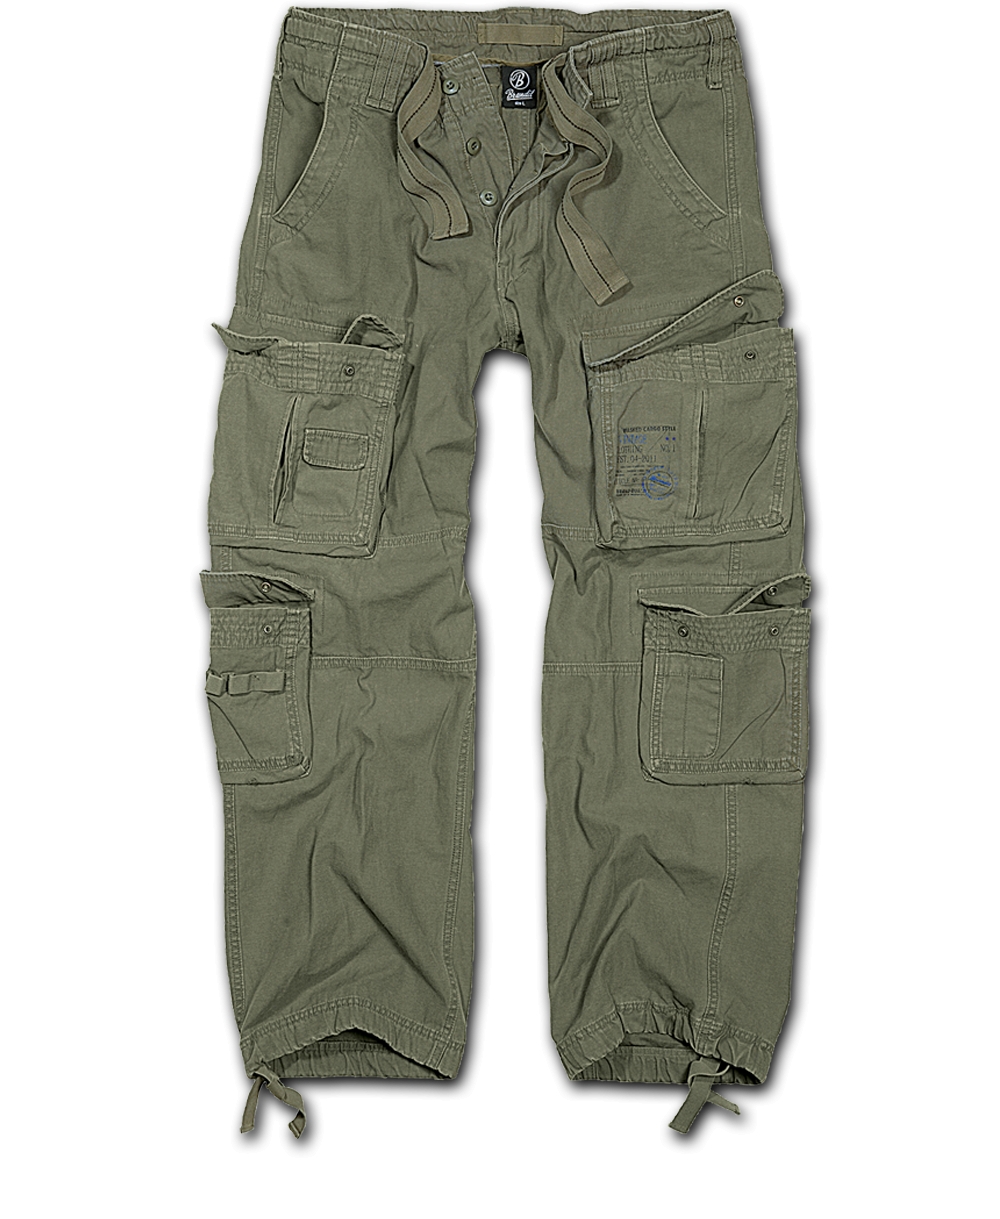 Kalhoty Brandit Pure Vintage - olivové, 4XL